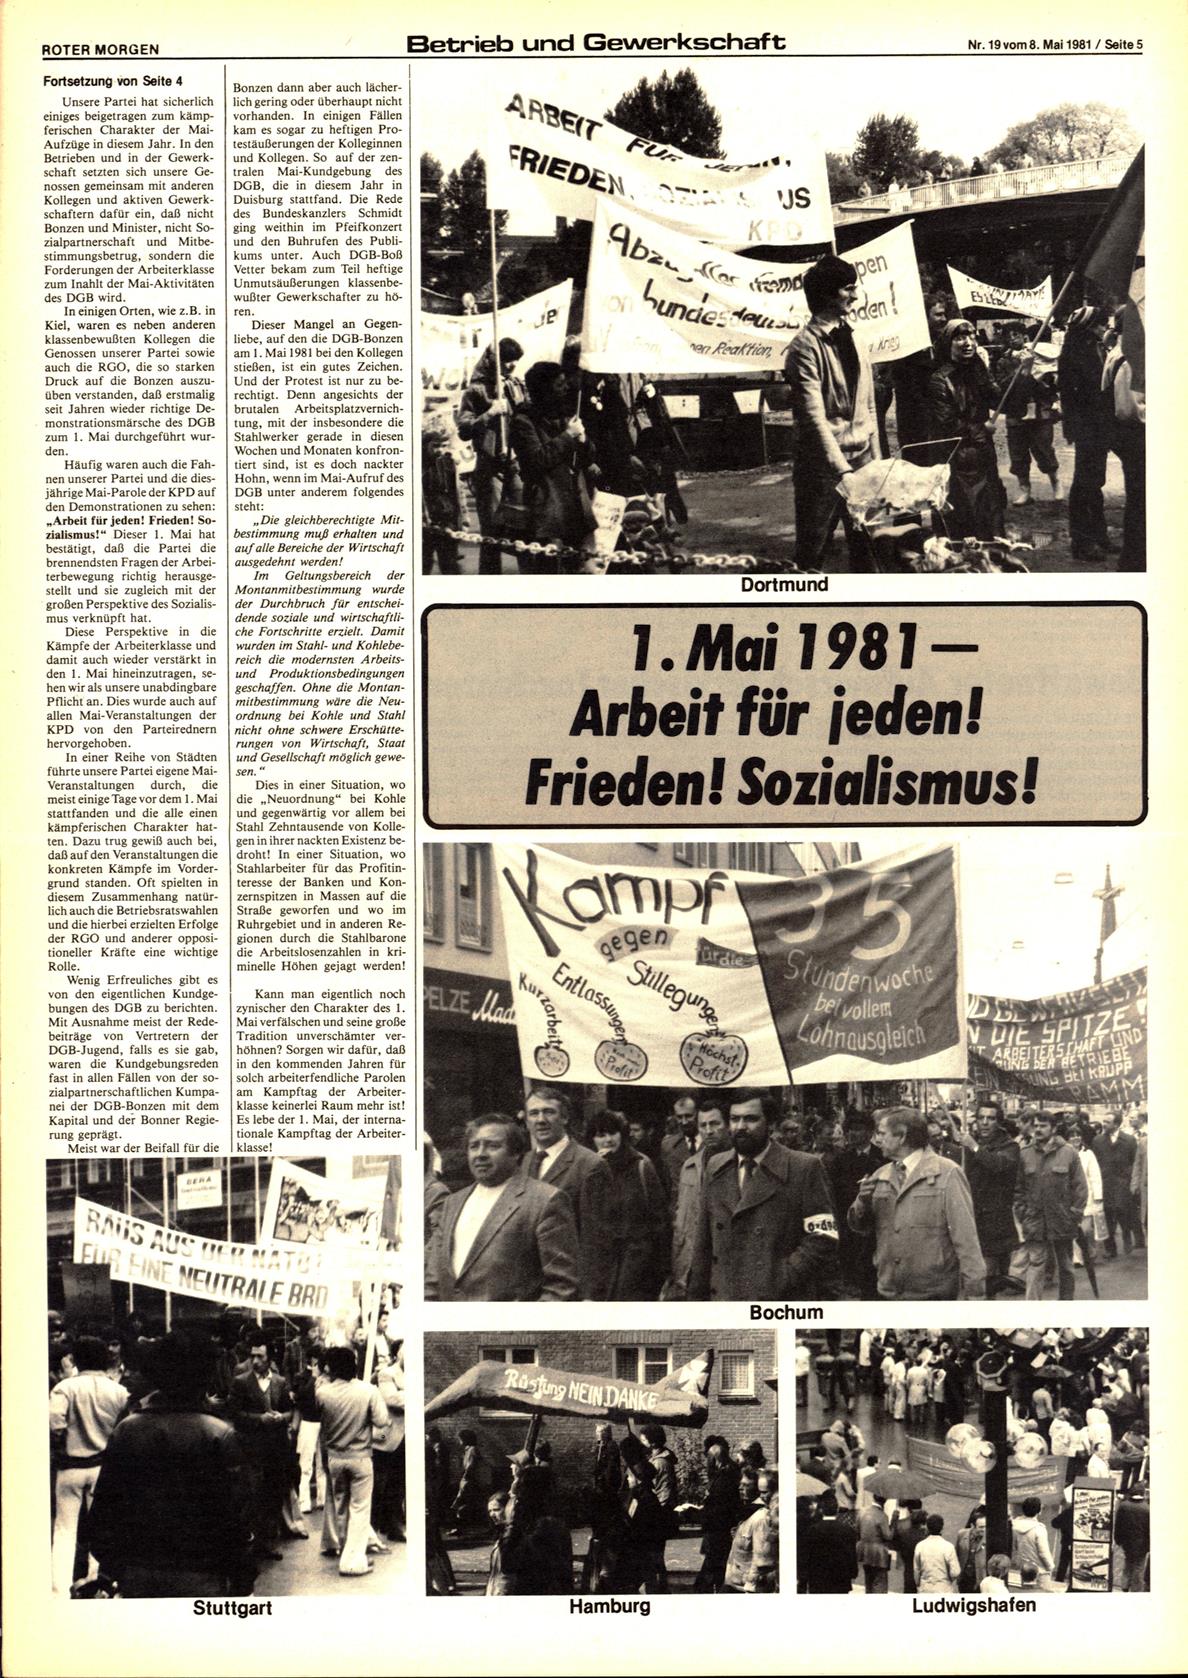 Roter Morgen, 15. Jg., 8. Mai 1981, Nr. 19, Seite 5